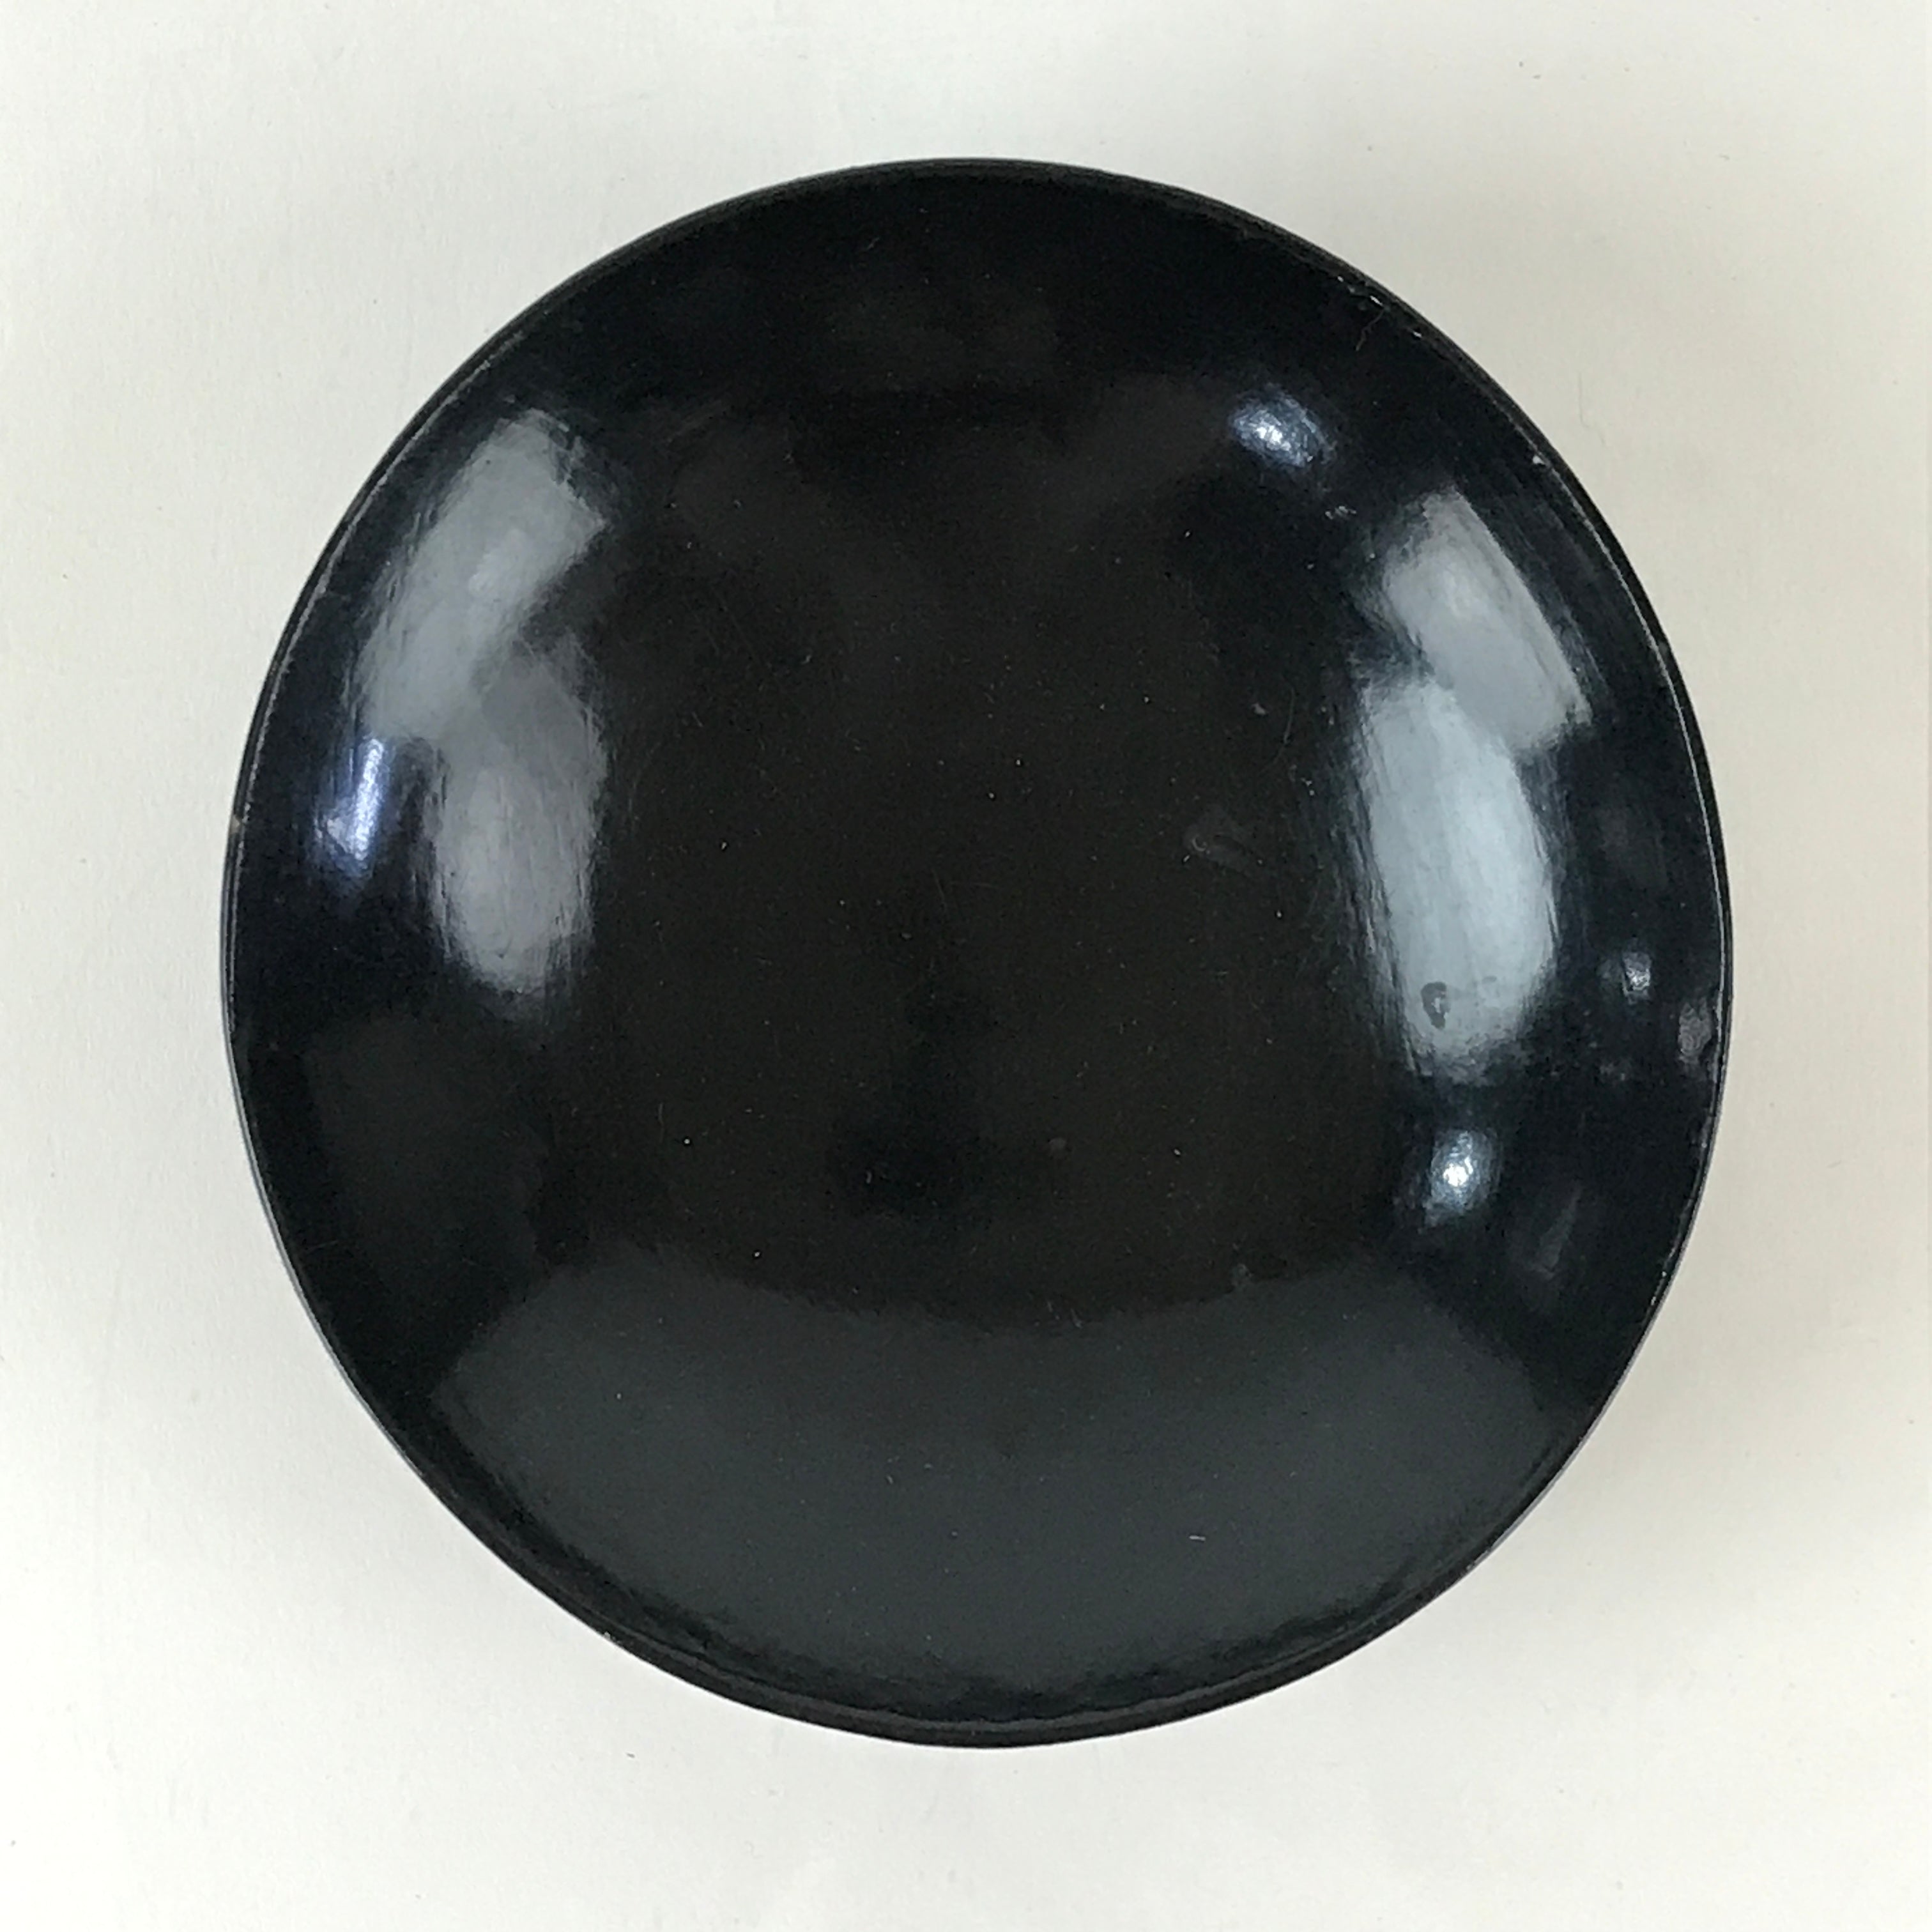 Japanese Lacquerware Small Bowl Vtg Urushi Black Kobachi LB61